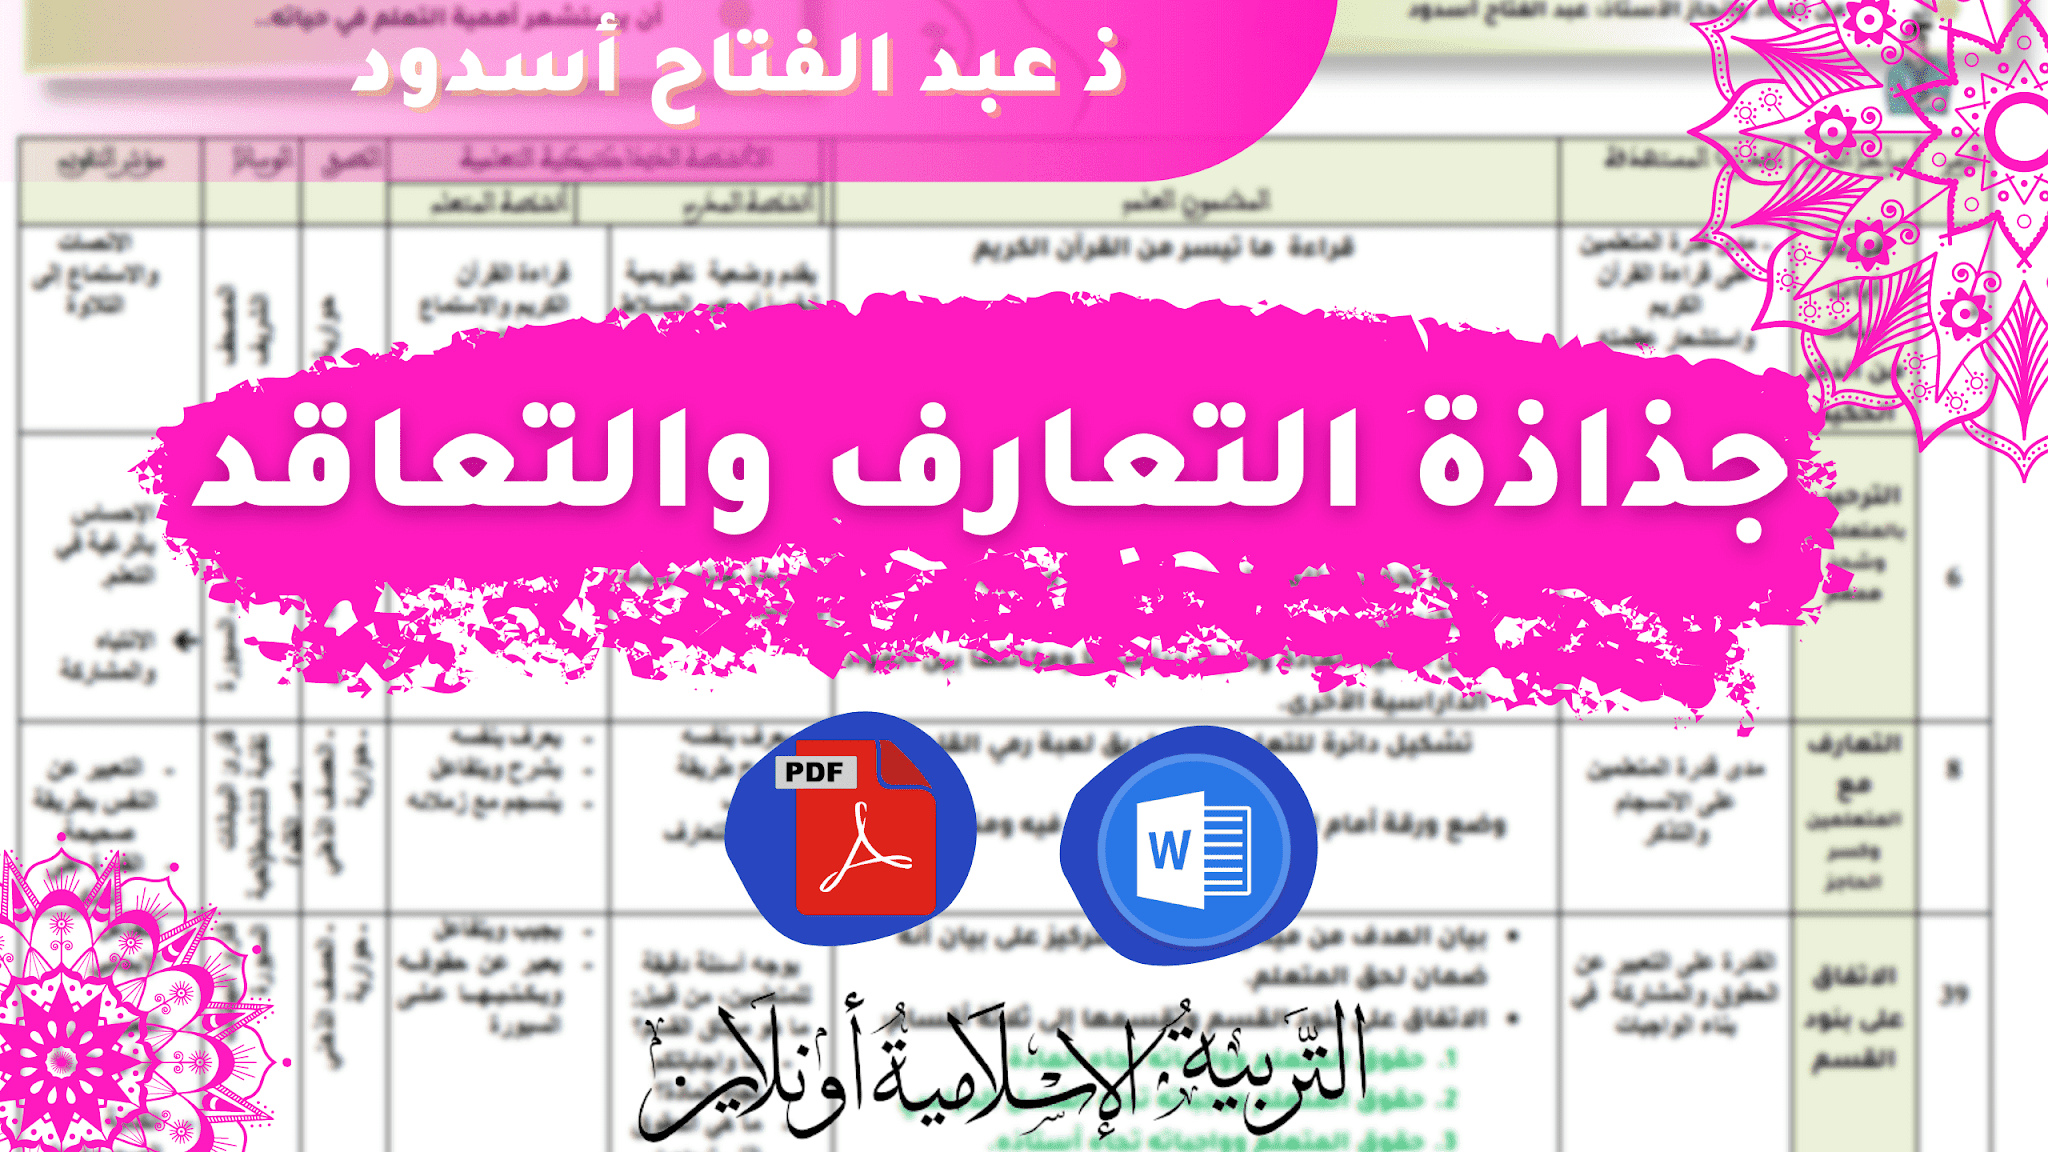 جذاذة التعارف والاتفاق على بنود القسم(الحصة الأولى) للتحميل pdf  و word